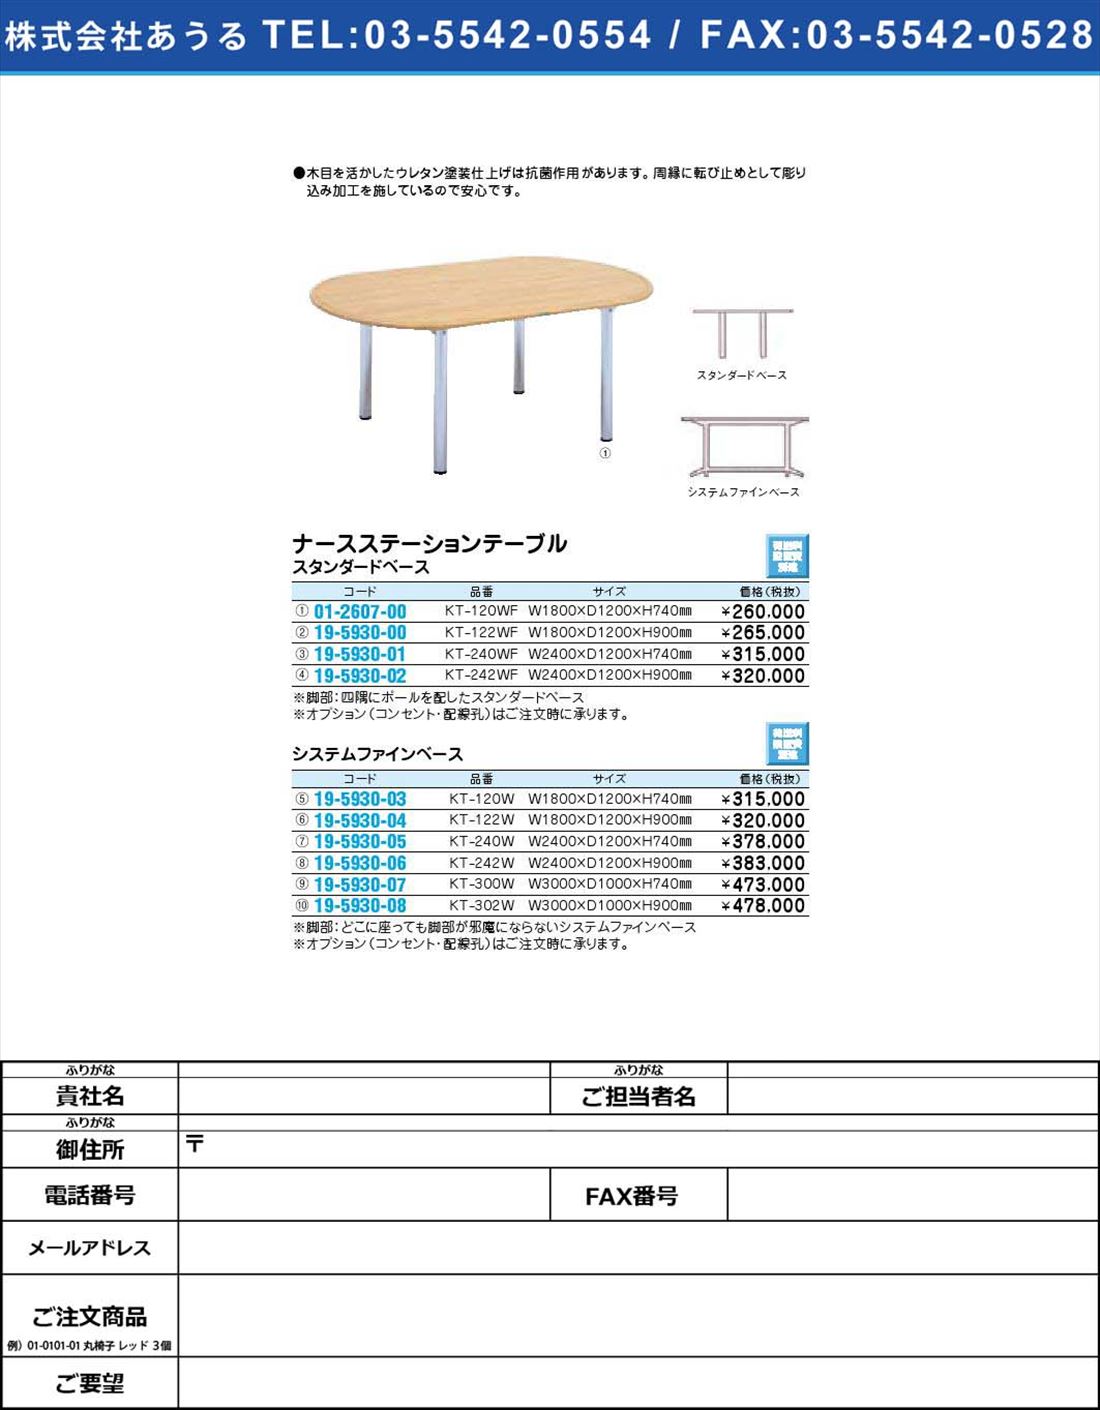 ナースステーションテーブル システムファインベースKT-122W(19-5930-04)【1個単位】